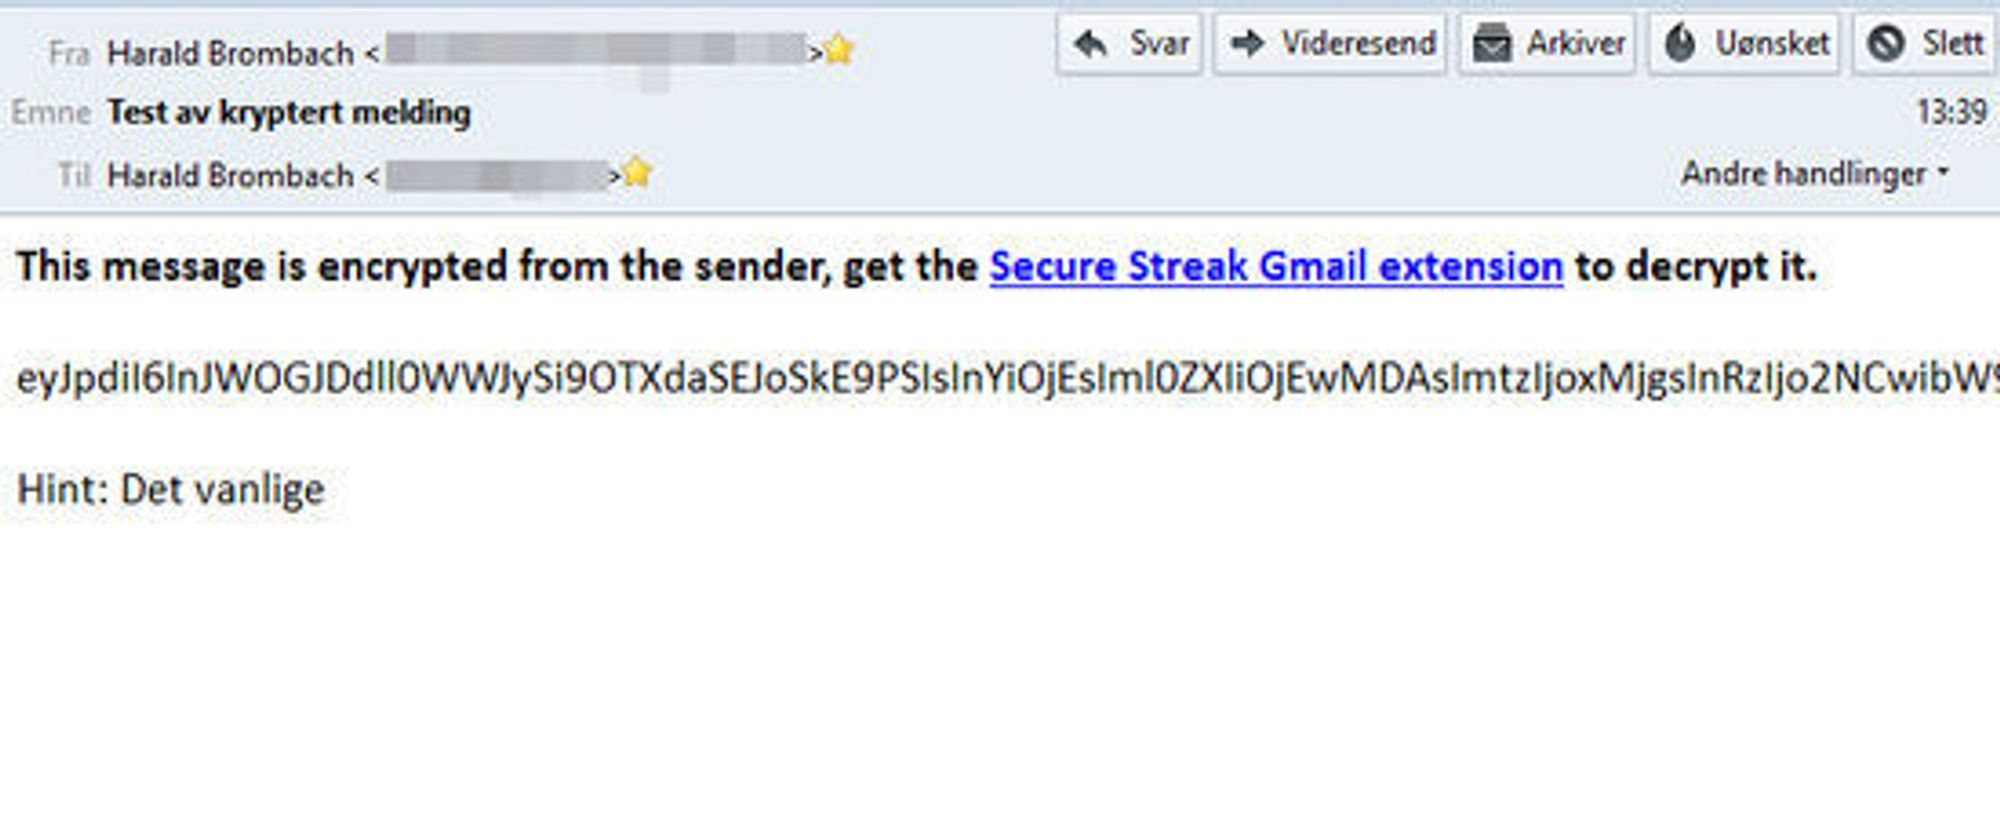 Slik ser den krypterte e-posten ut for mottakeren, her i en ekstern e-postklient. Dersom e-posten er sendt til en annen e-postadresse enn den til en Gmail-konto, kan meldingen videresendes til mottakerens Gmail-konto og åpnes der.